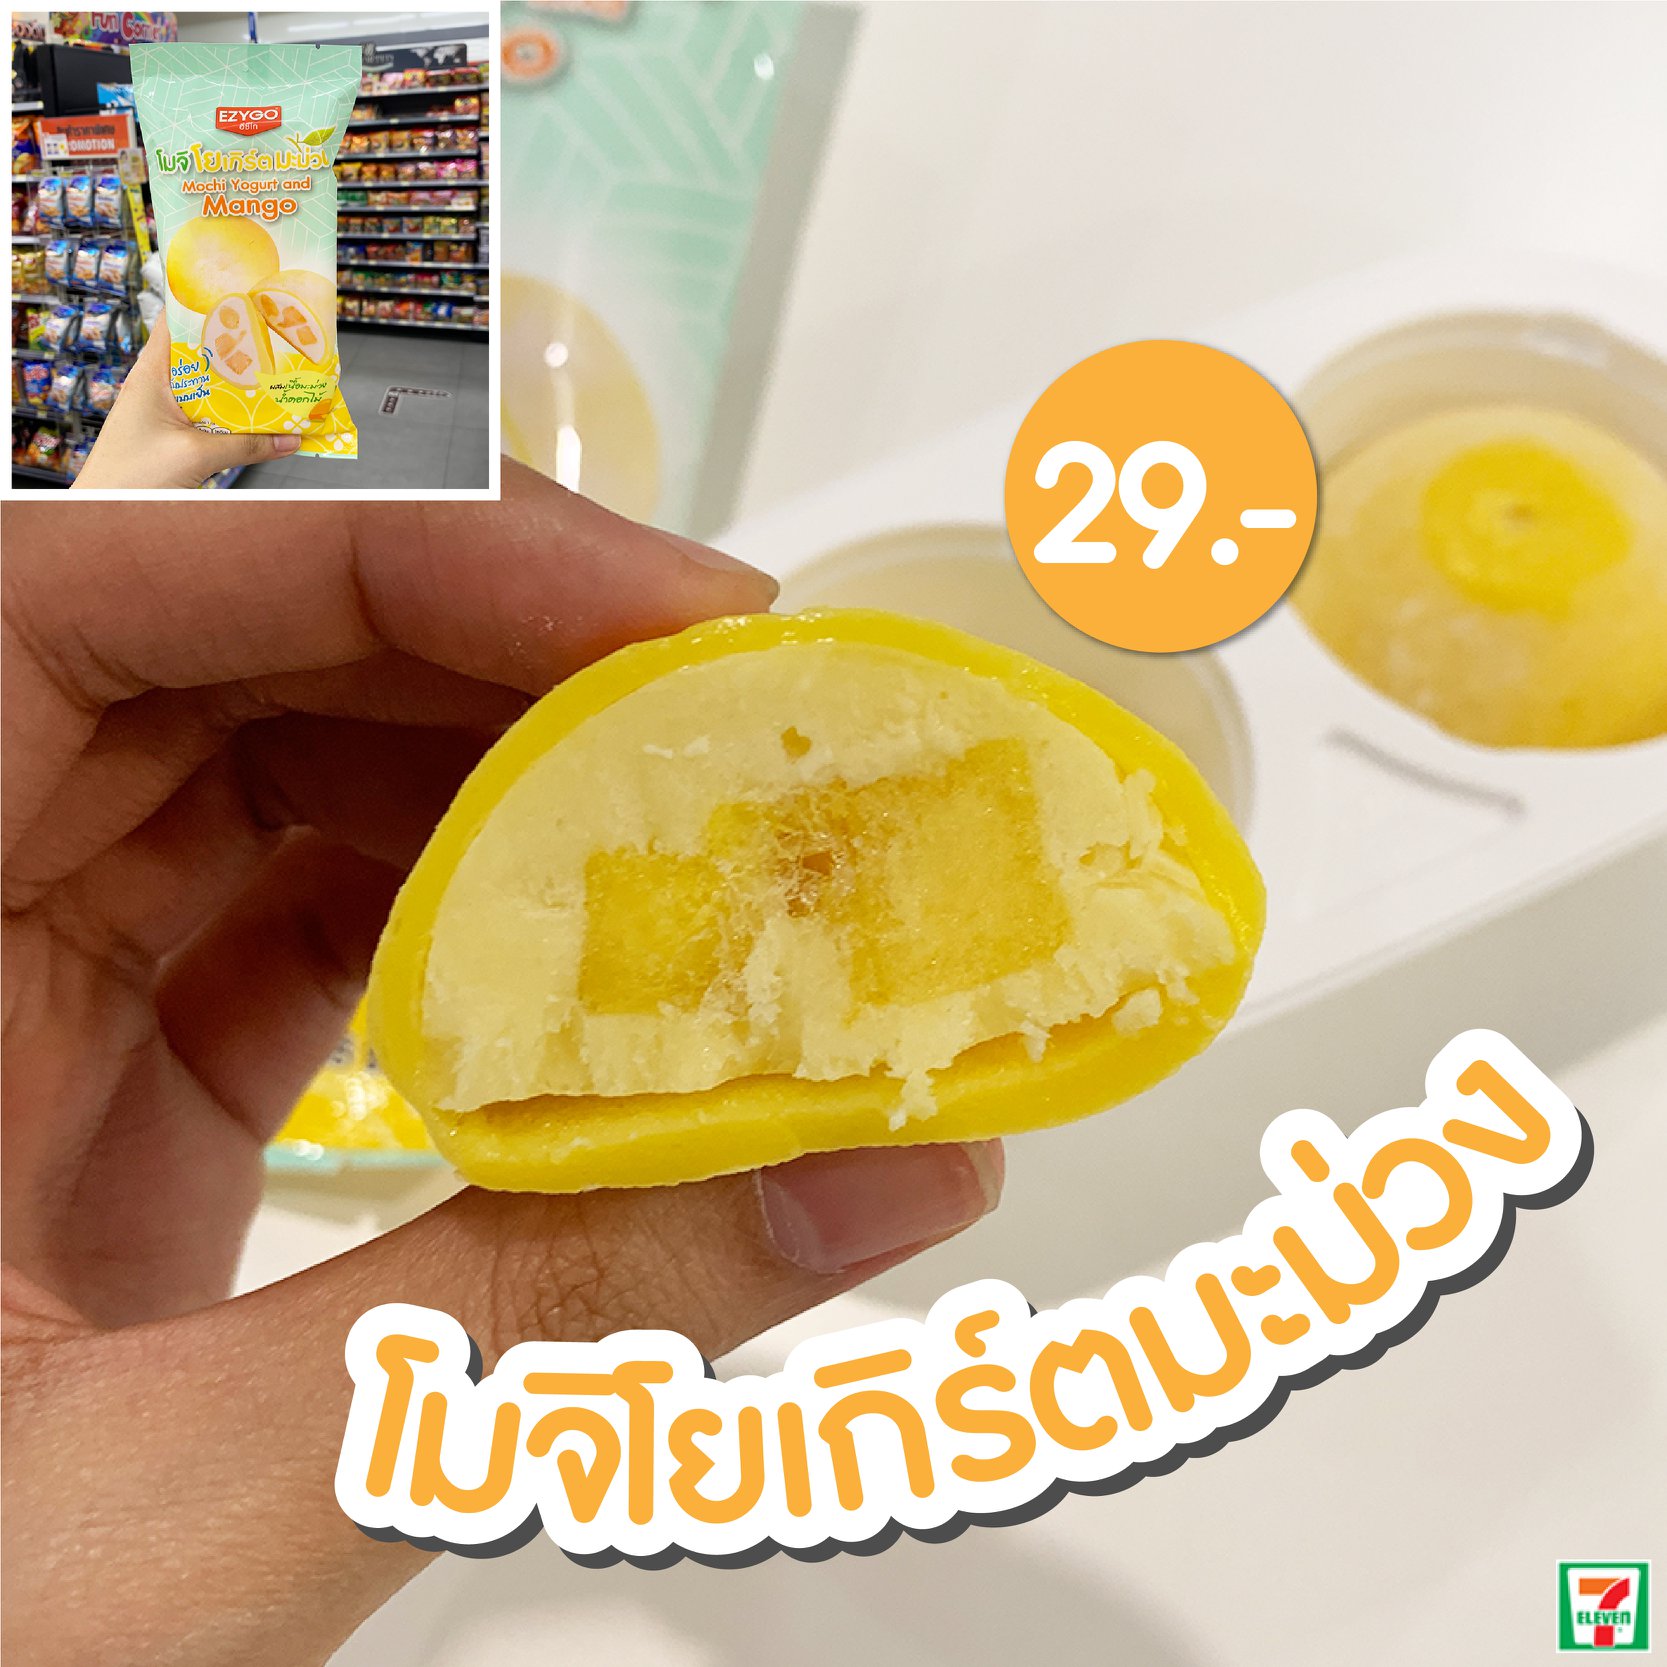 7-Eleven Thailand Mango Series